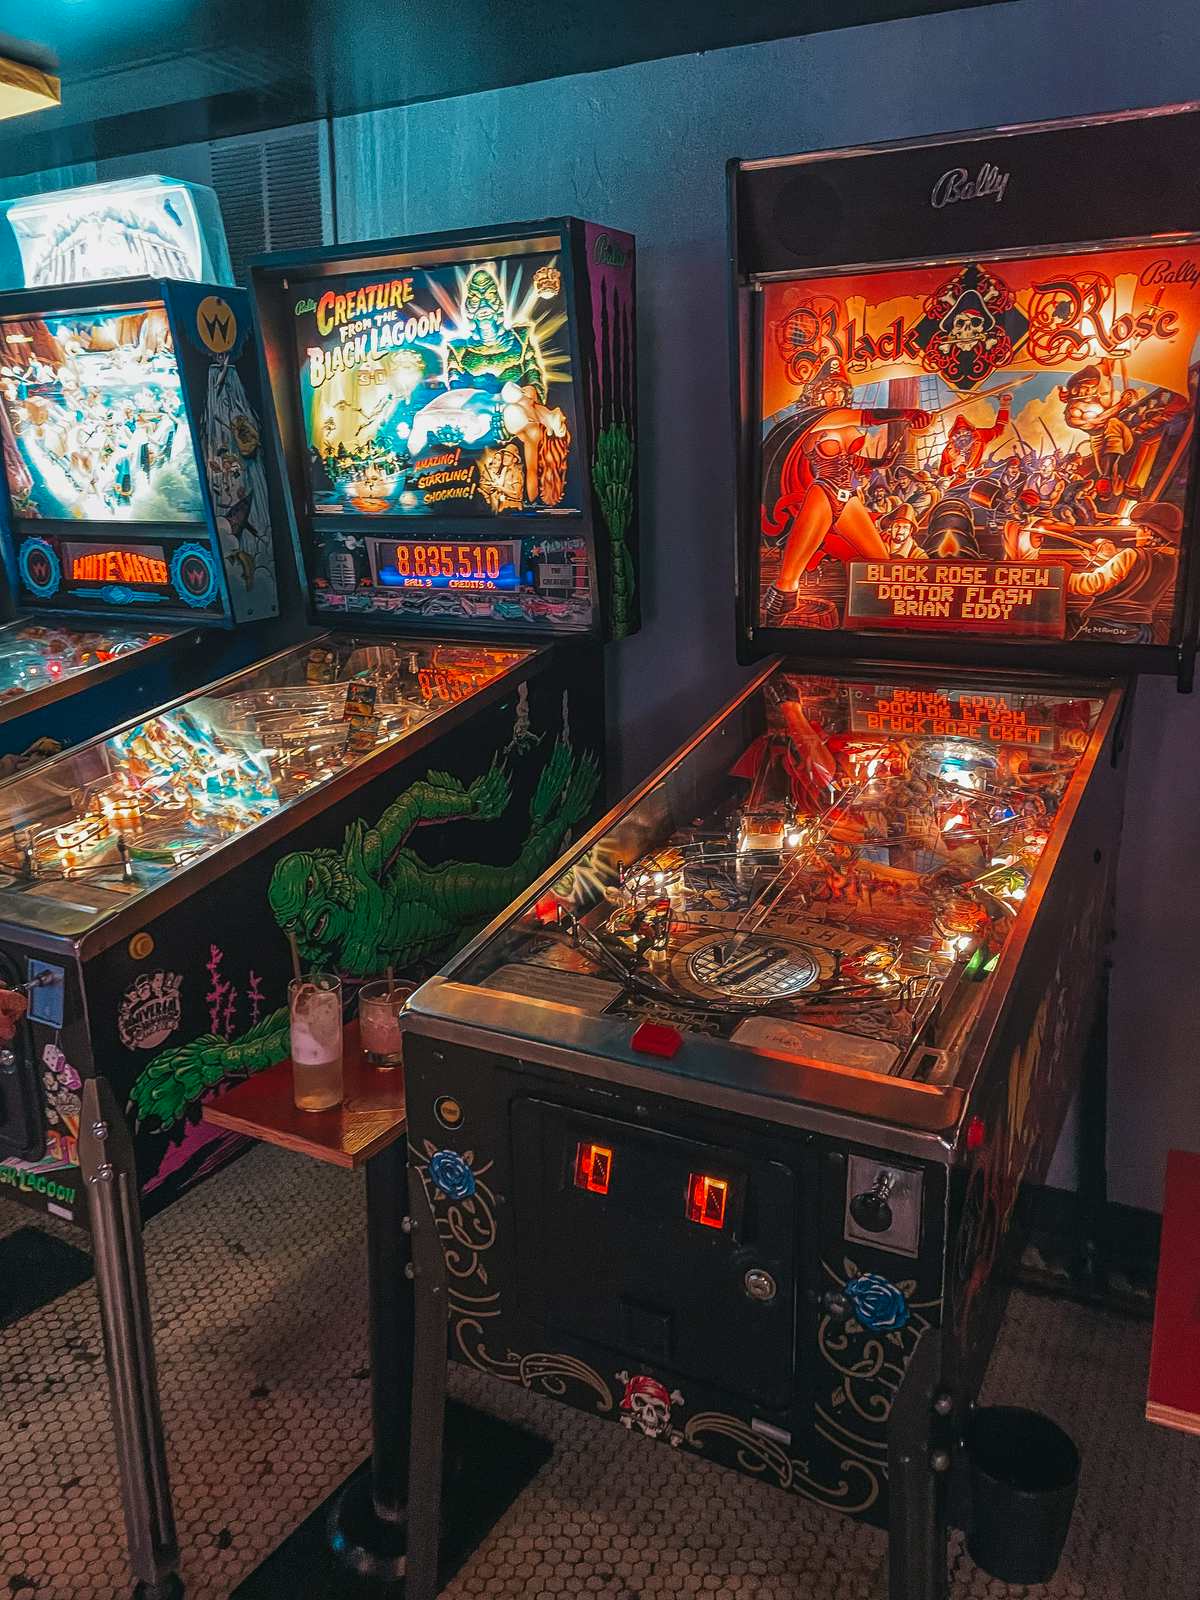 Arcade games at Quarters bar in Salt Lake City Utah